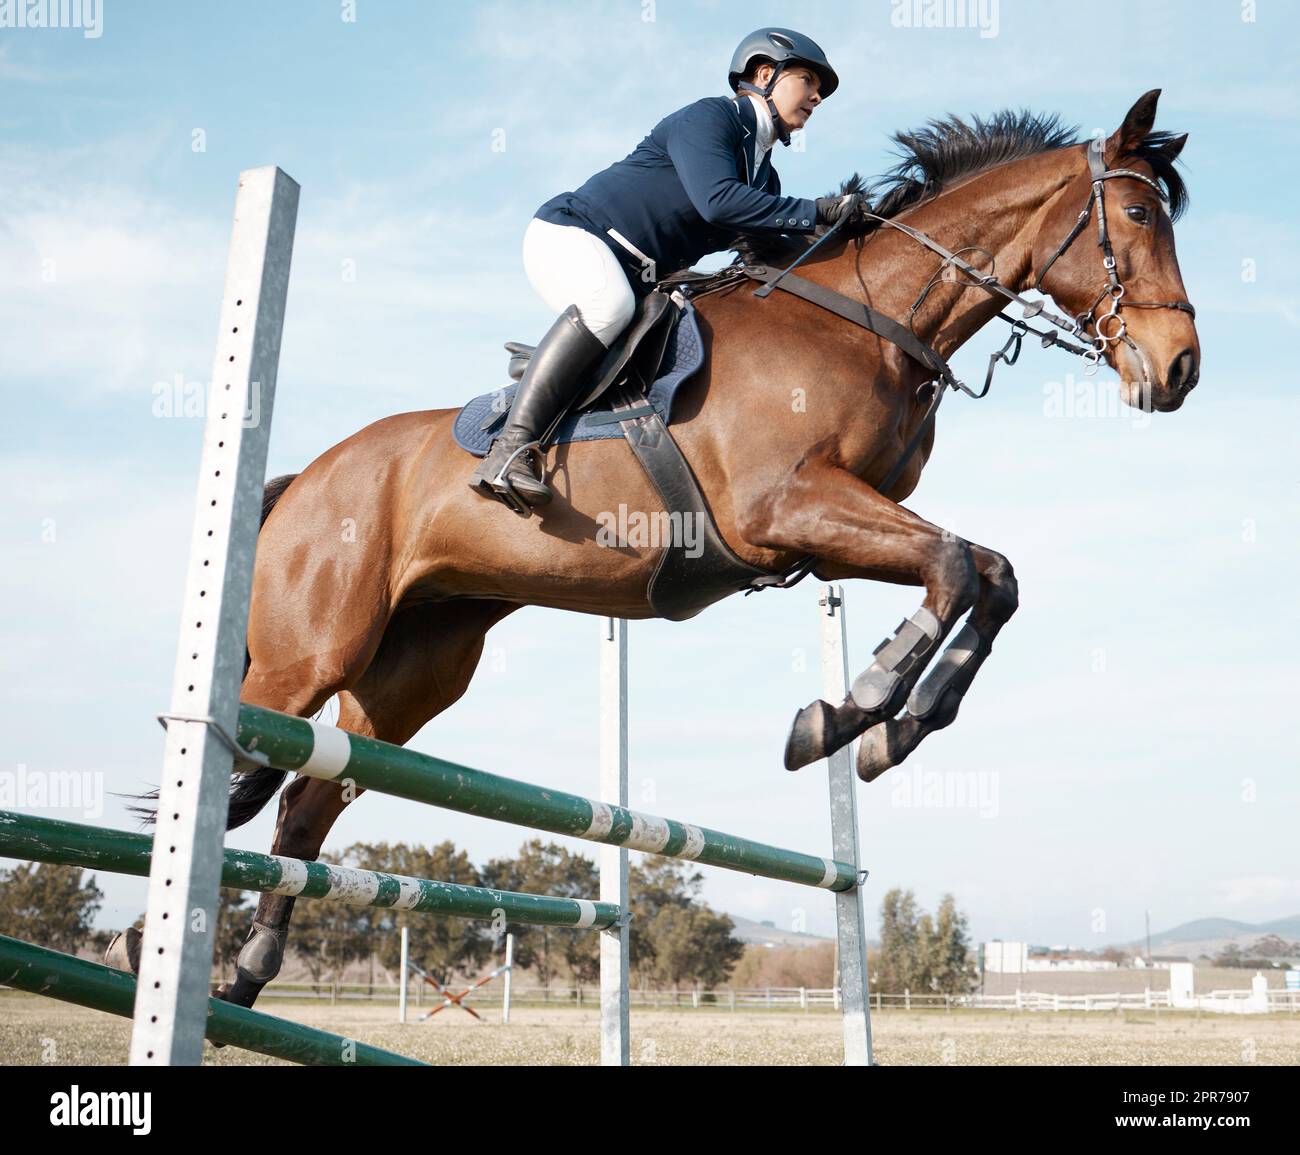 Hindernisse leicht zu überwinden. Ganzkörperaufnahme einer jungen Reiterin, die auf ihrem Pferd über eine Hürde springt. Stockfoto